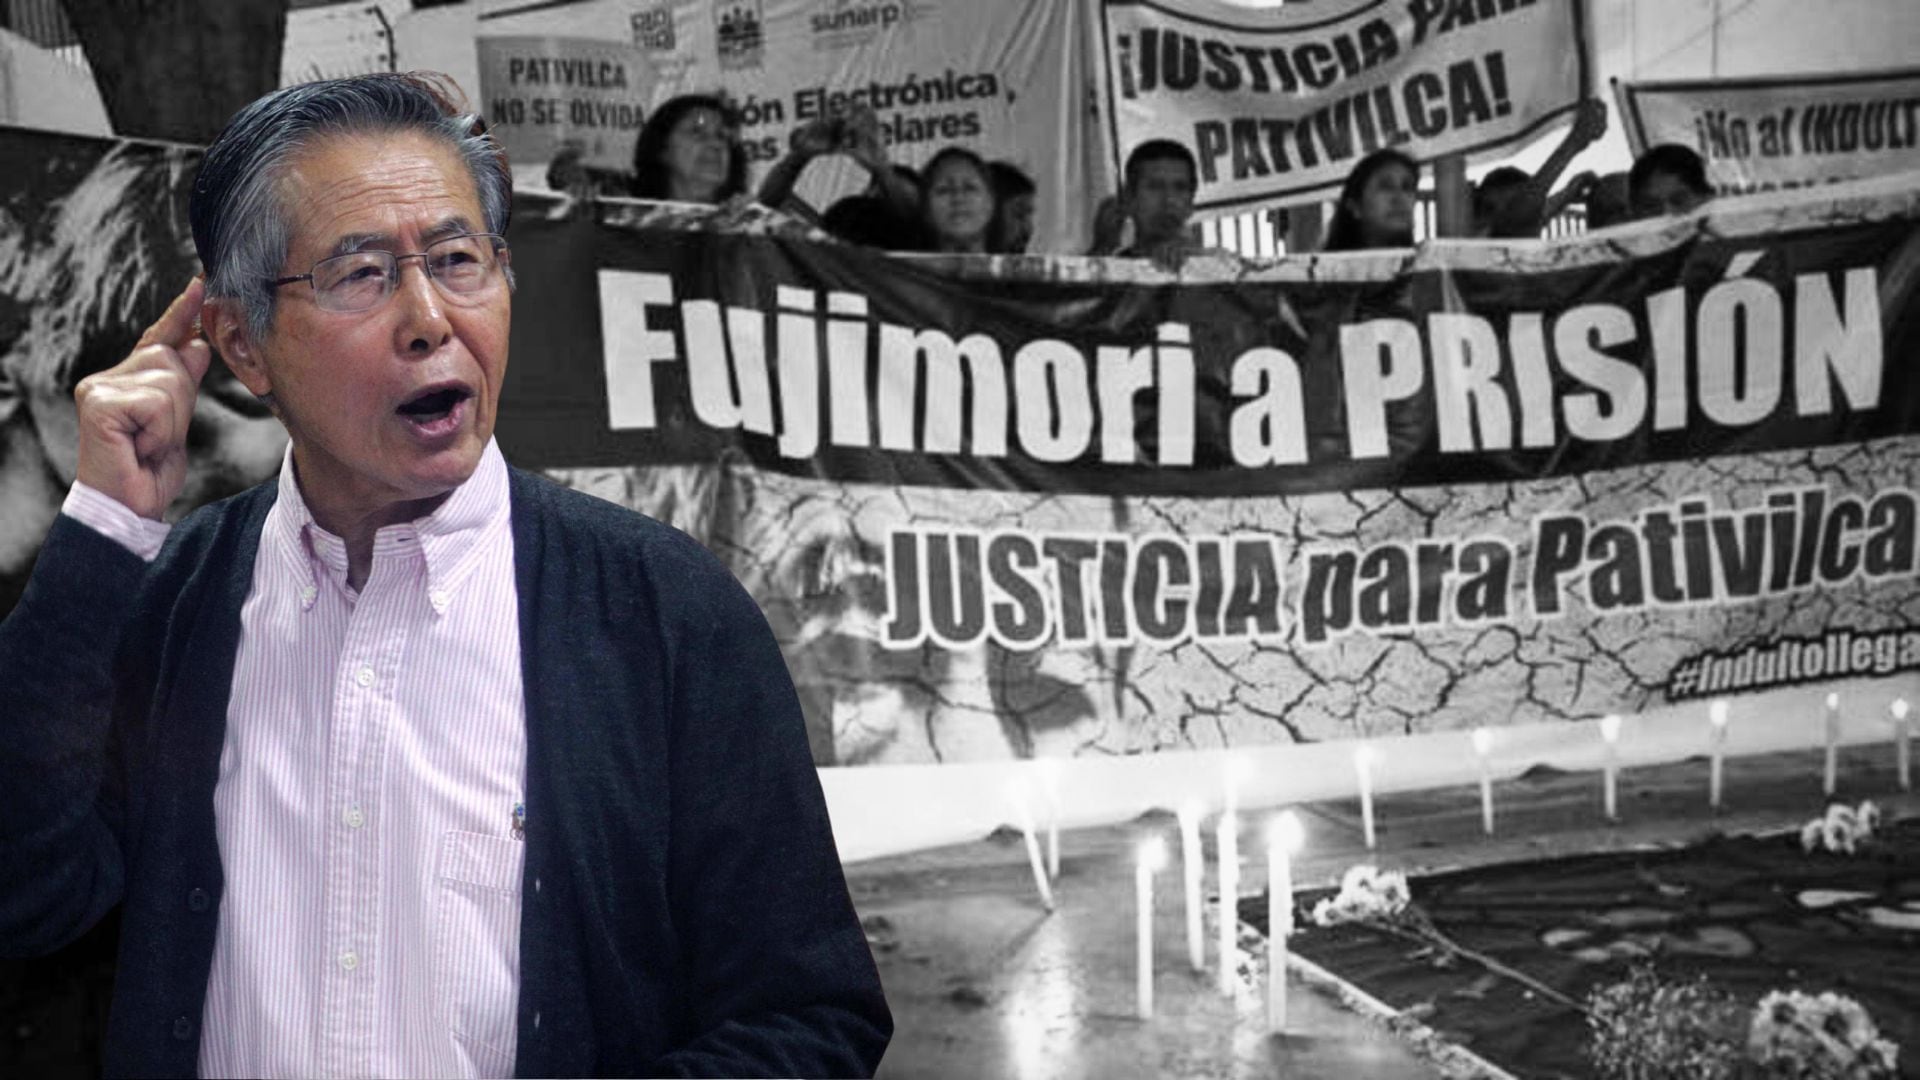 Caso Pativilca - Alberto Fujimori - pedido de prision domiciliaria.